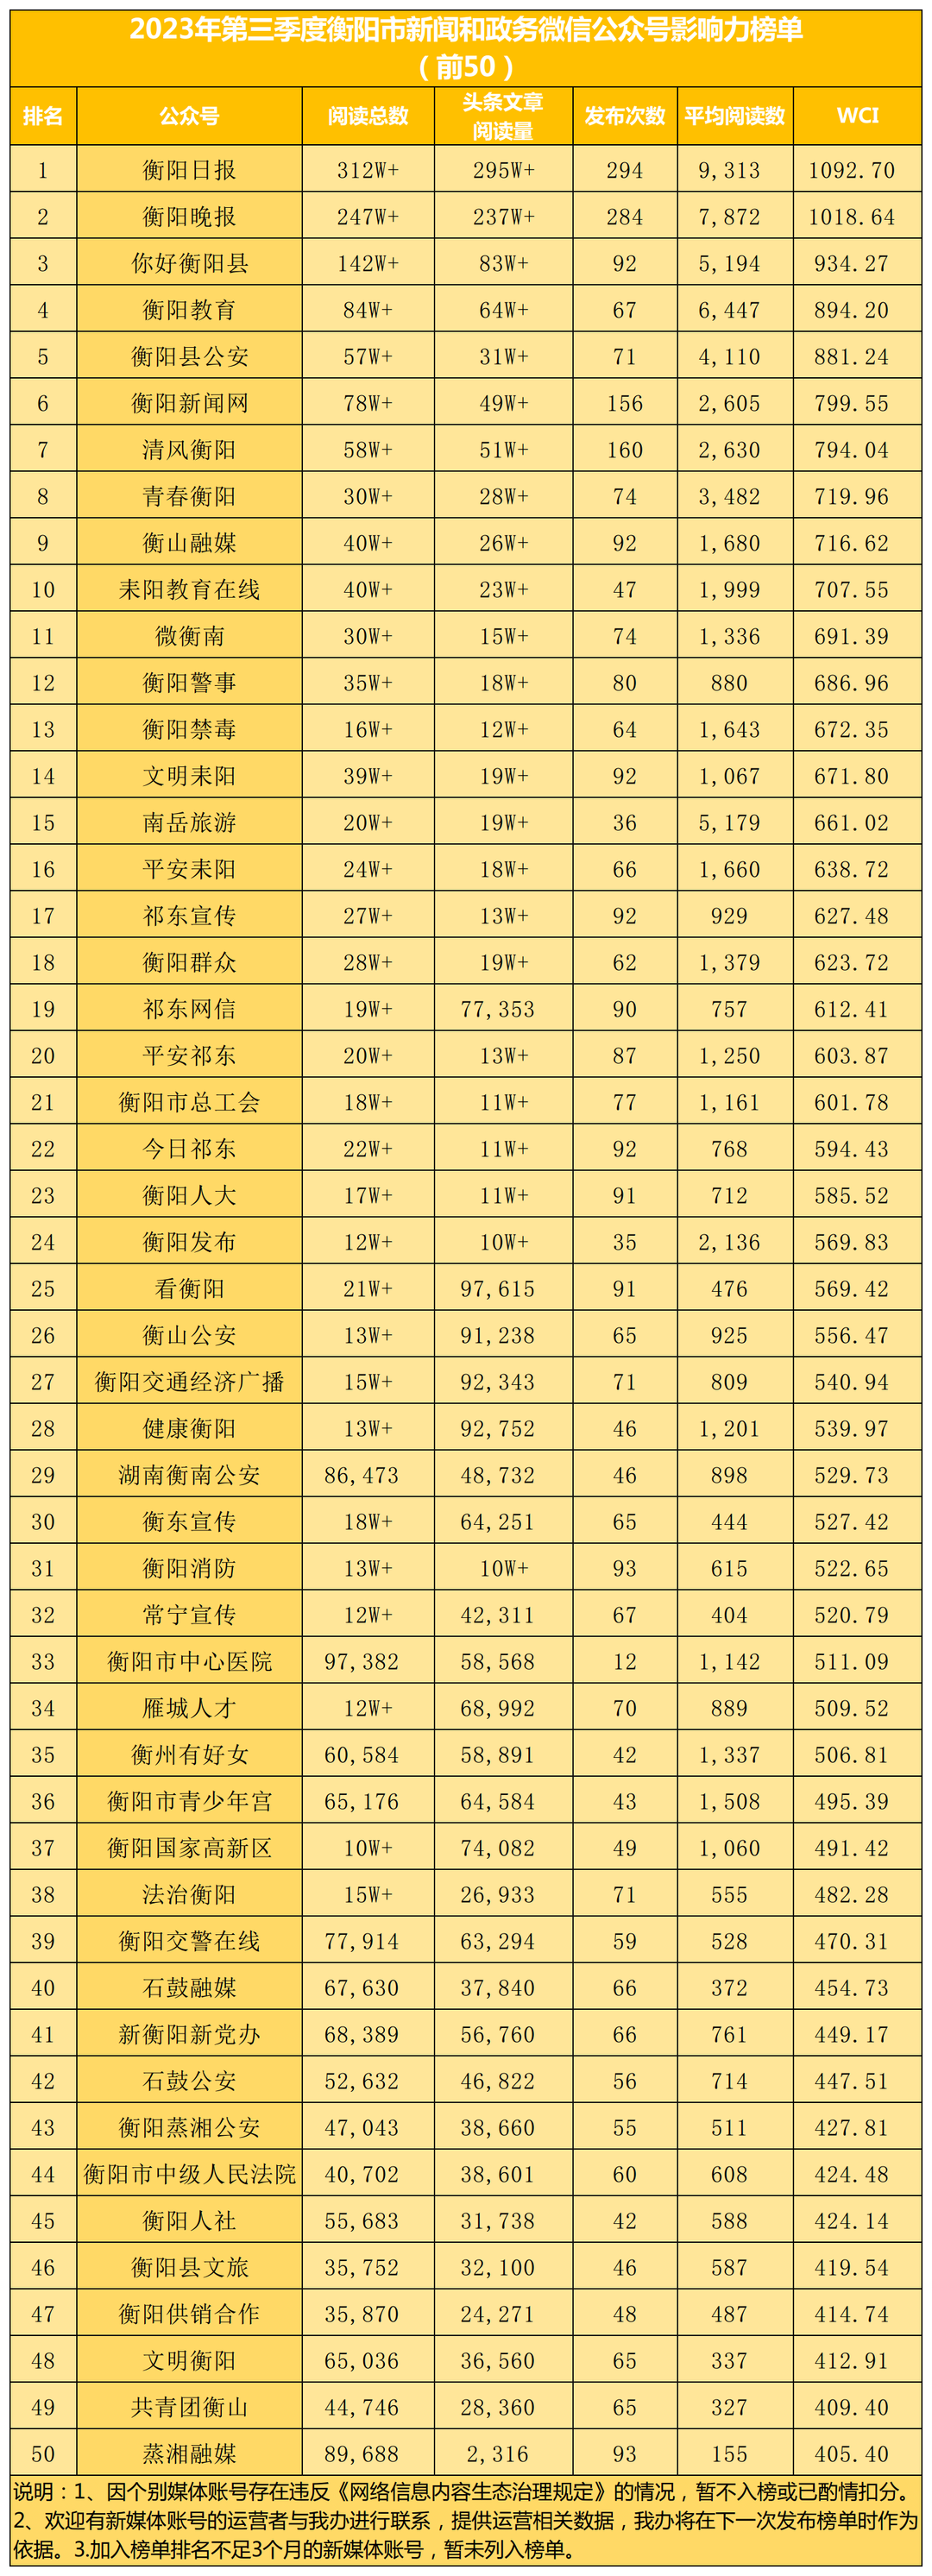 (领导批审版)2023年3季度政务媒体榜单.png